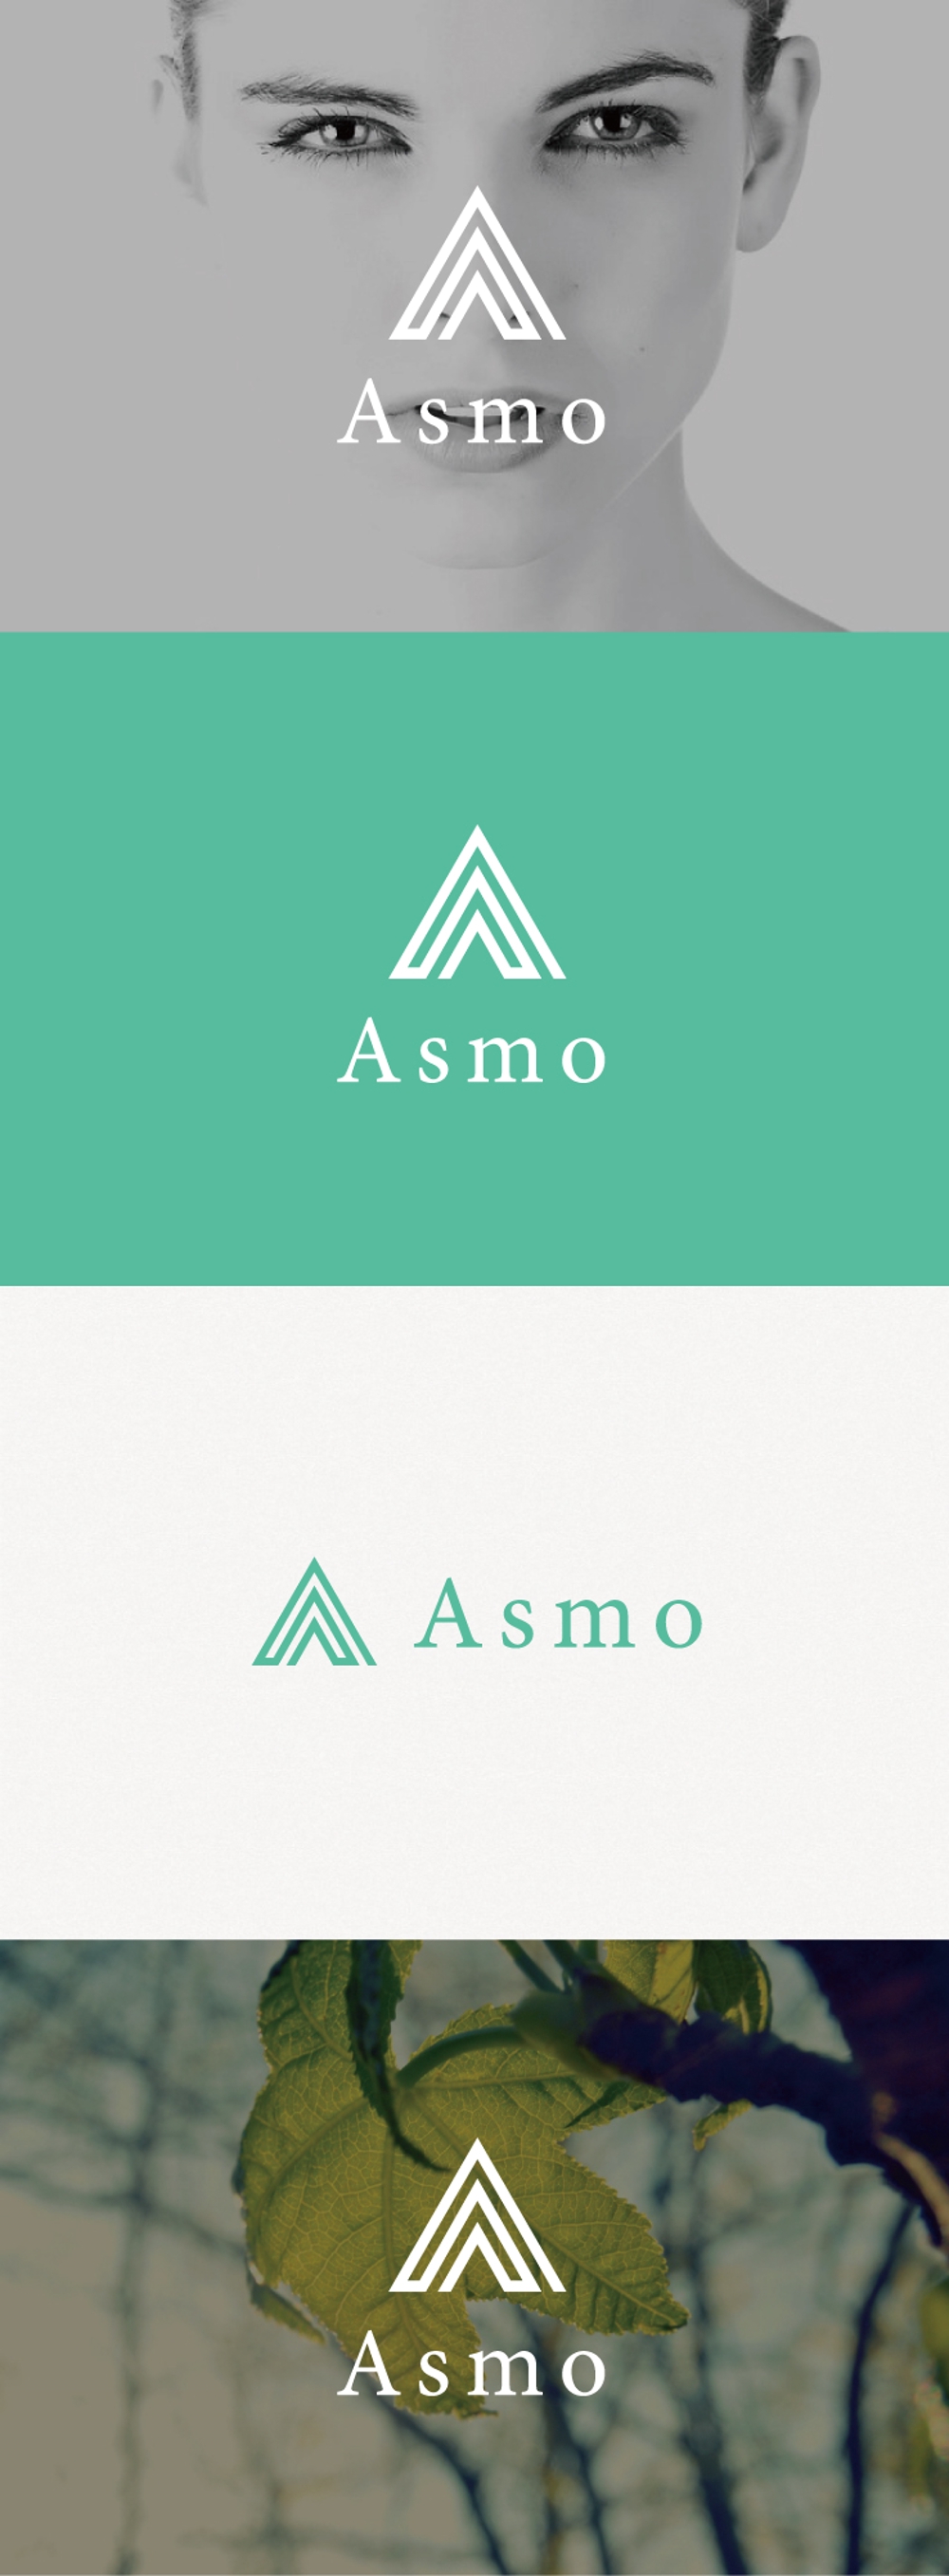 「株式会社Asmo」のロゴ